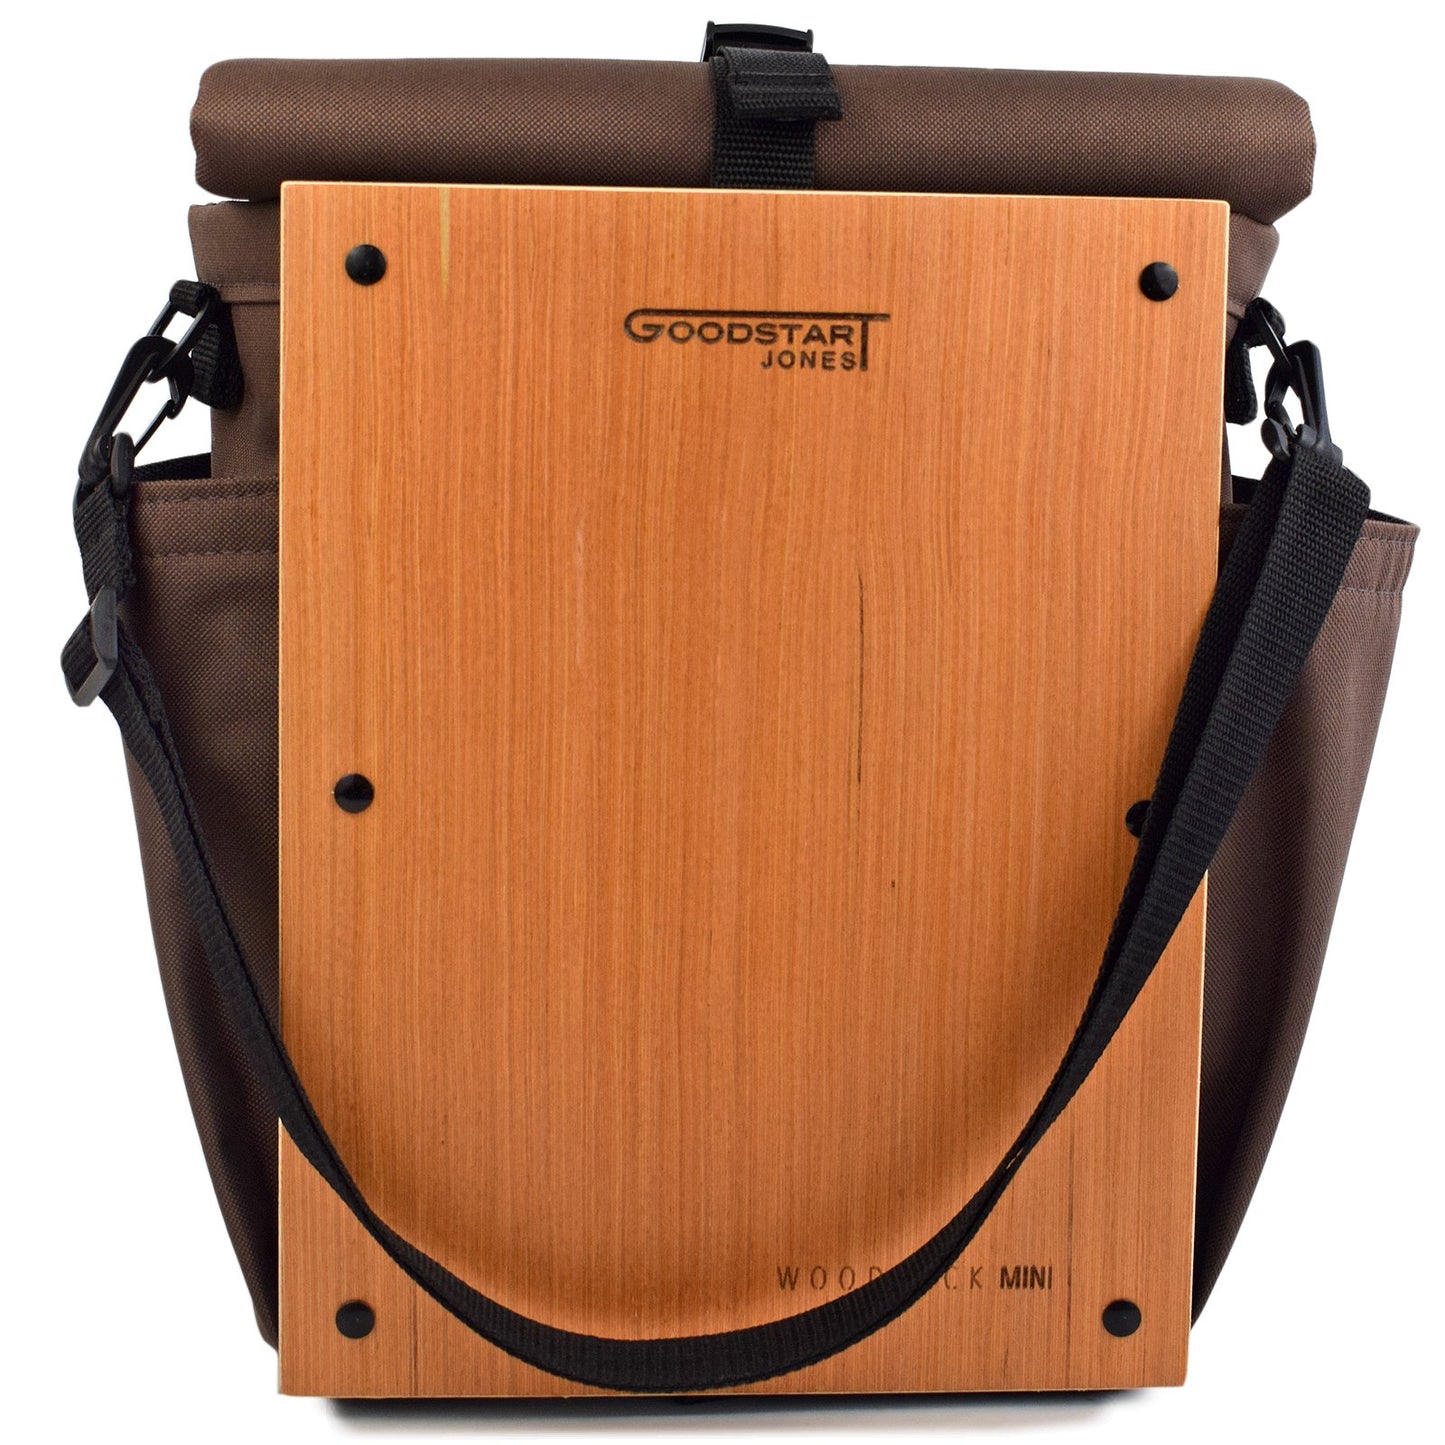 woodsack mini backpack by Goodstart Jones 